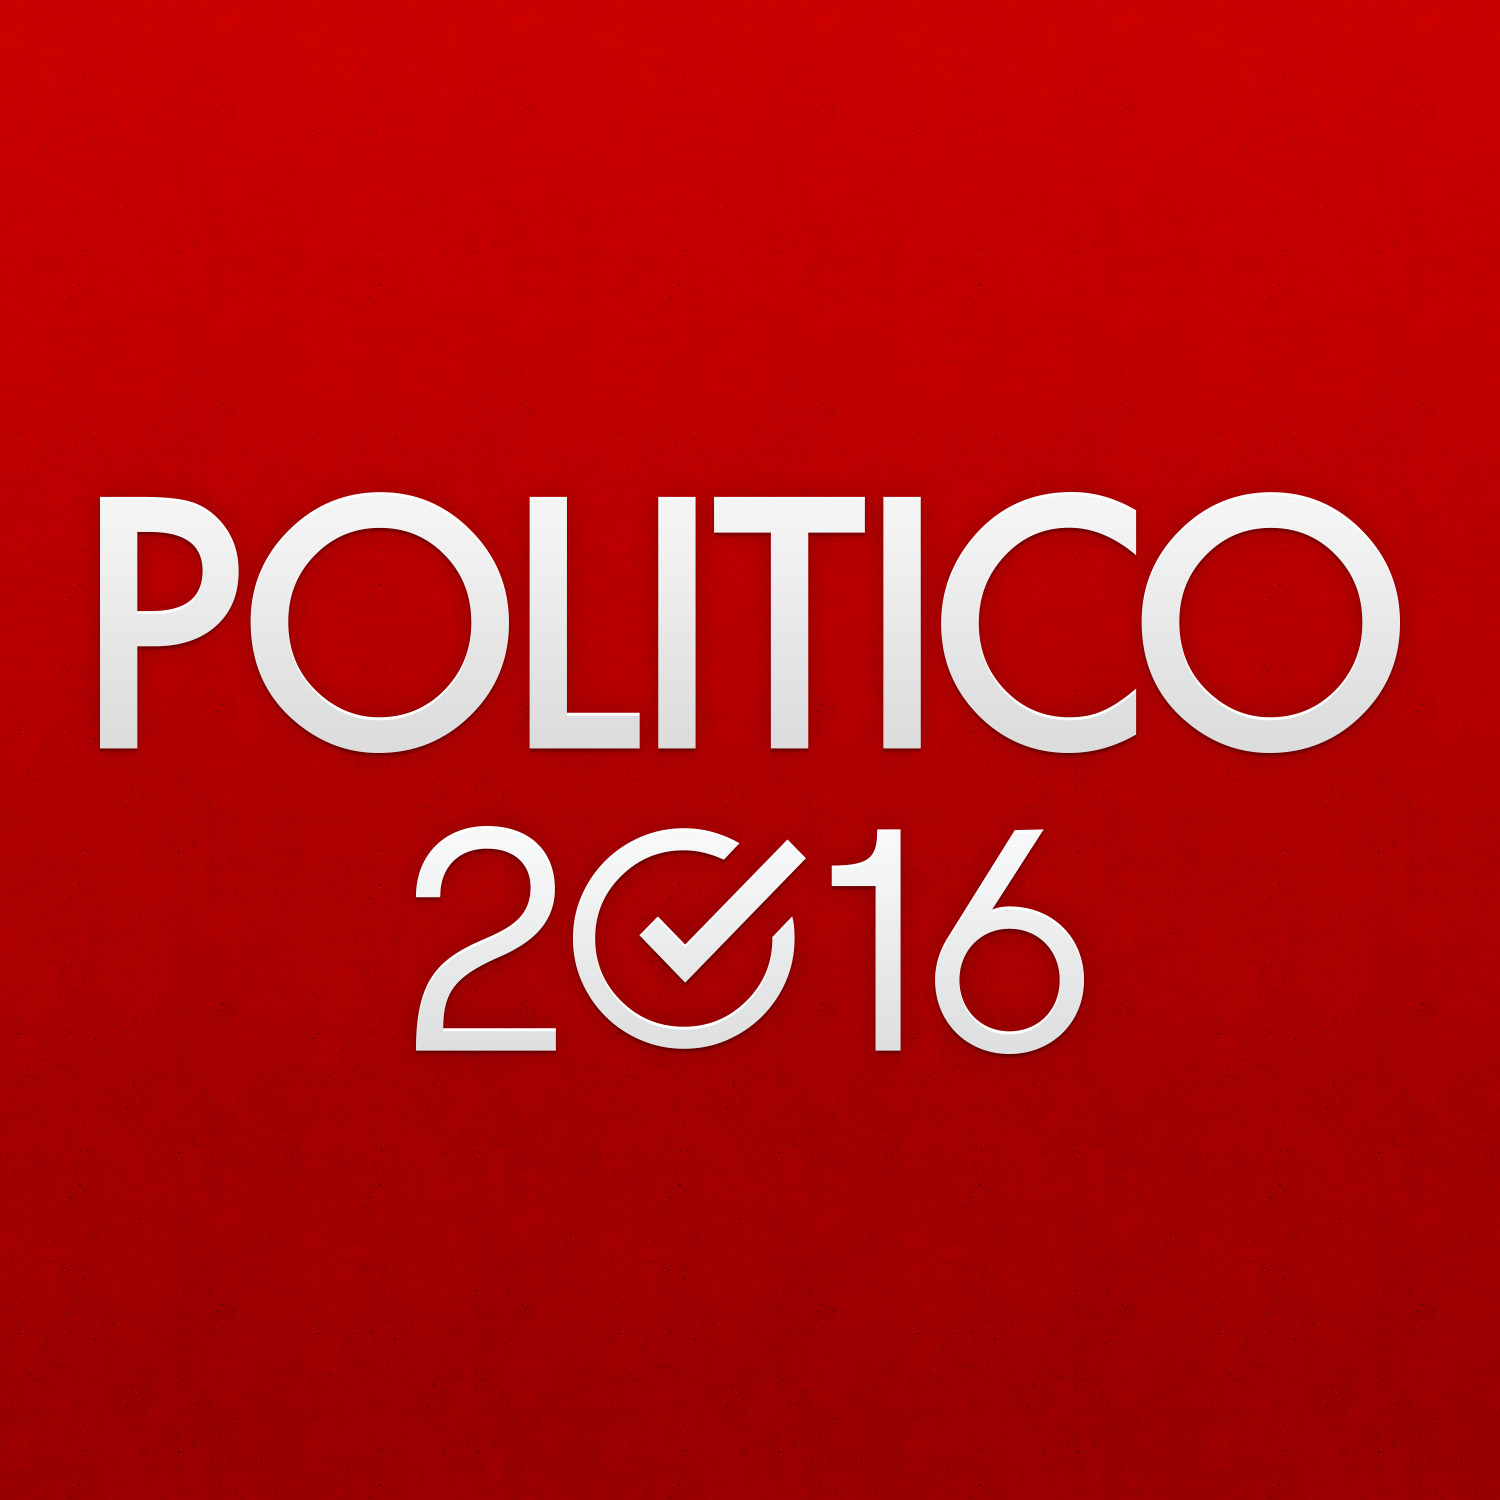 www.politico.com